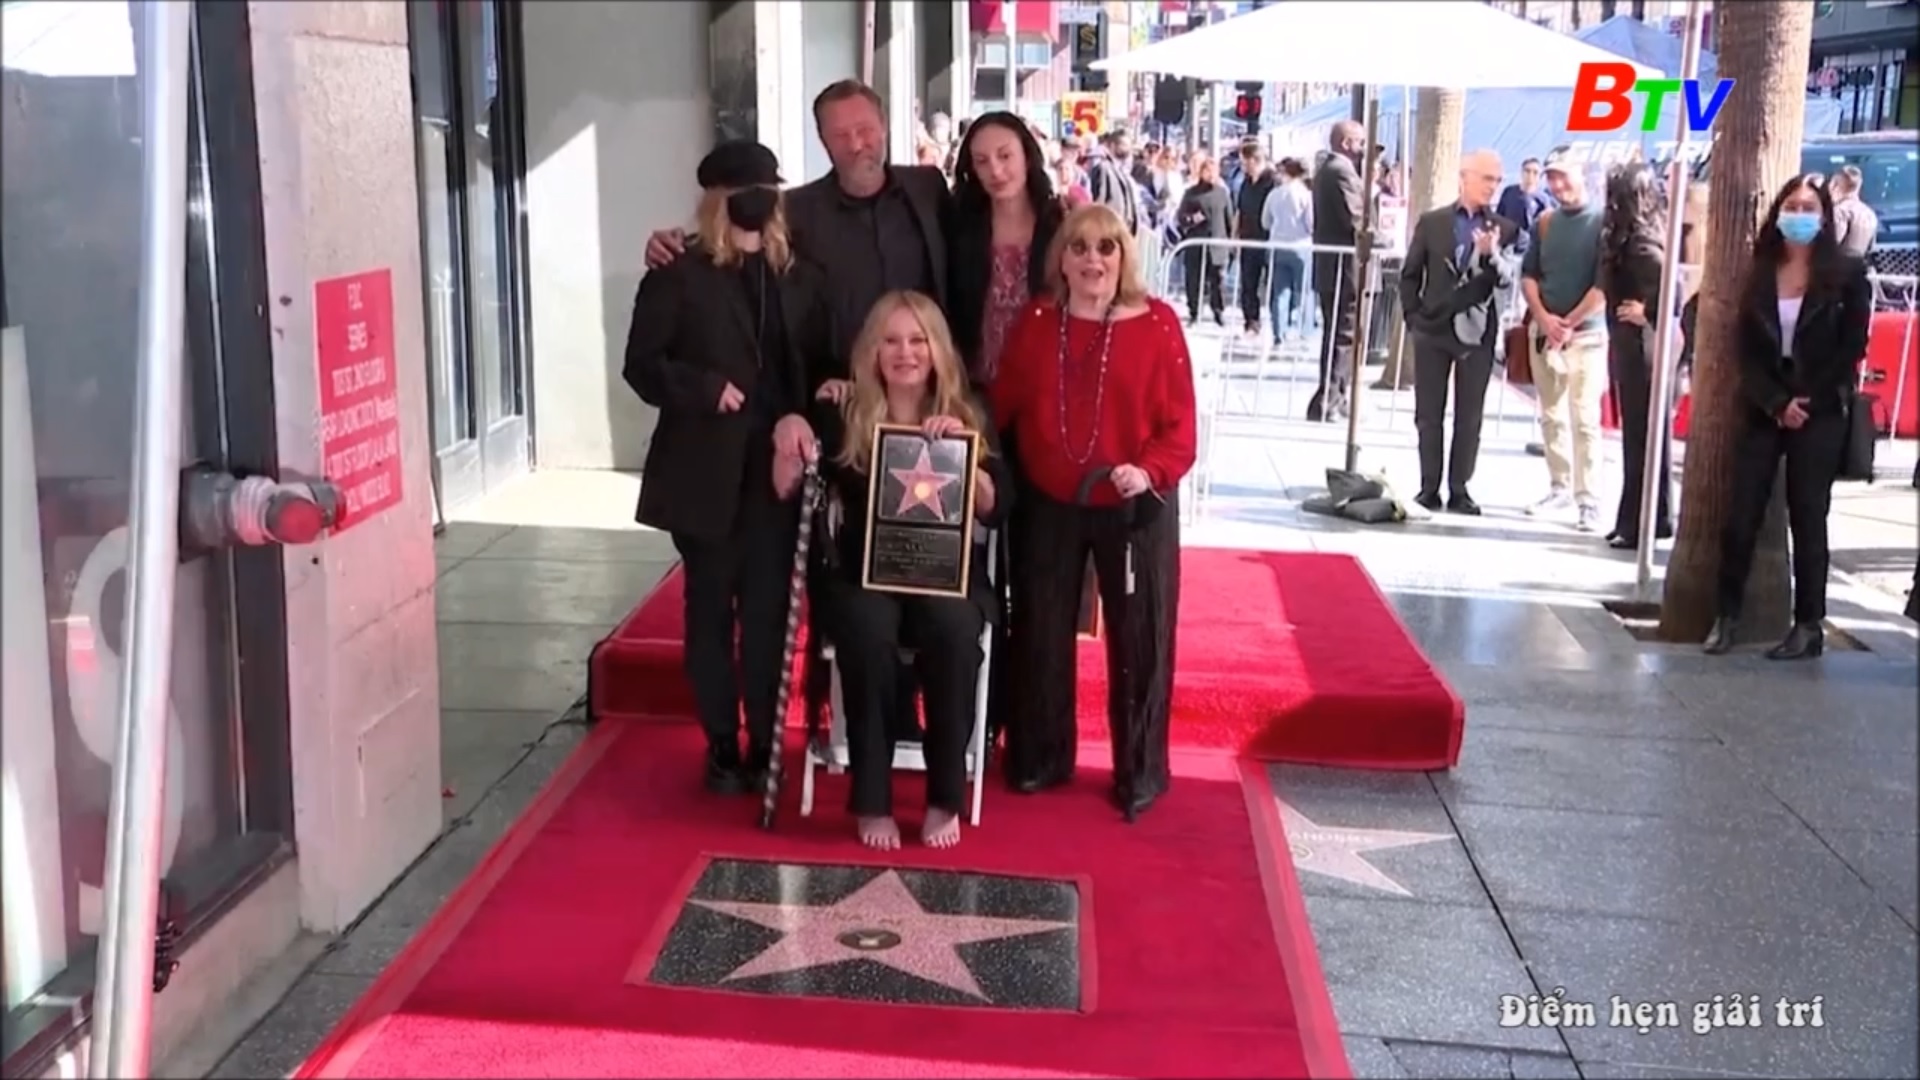 Ngôi sao mang tên Christina Applegate trên đại lộ danh vọng Hollywood